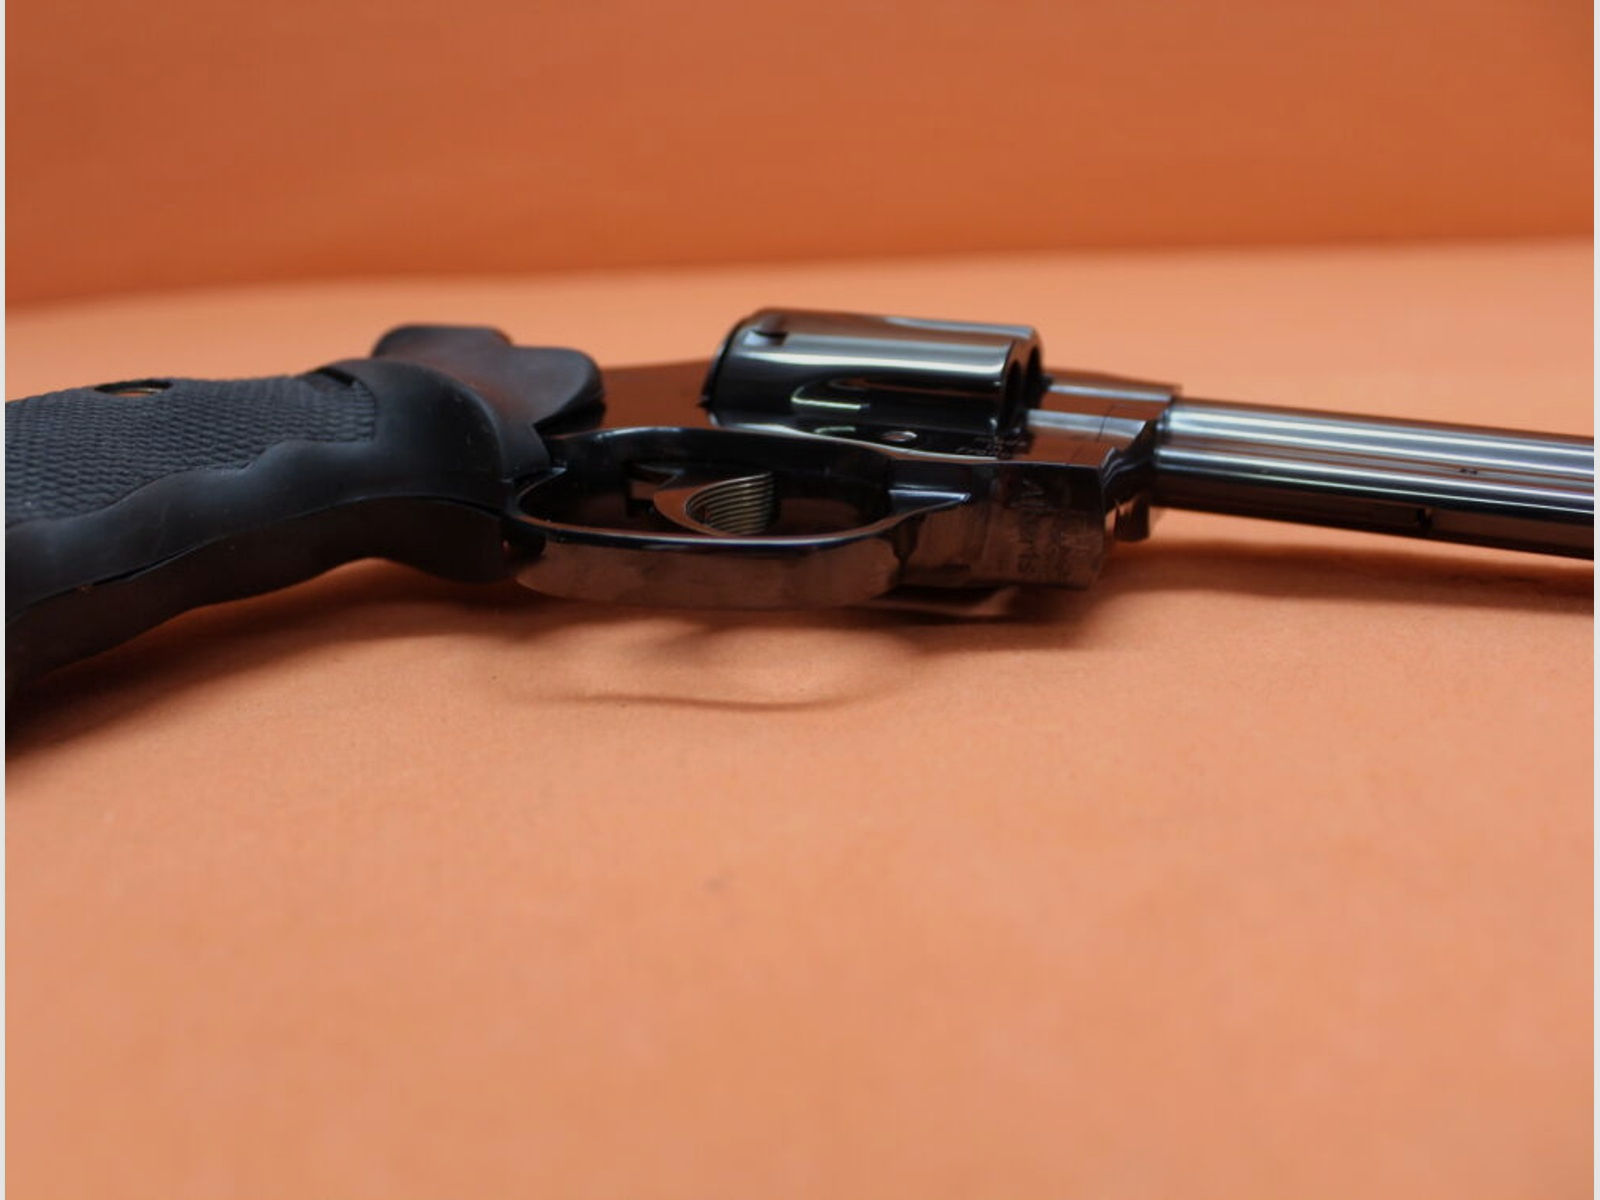 Manurhin	 Revolver .357Magnum Manurhin MR73 Sport 6" Lauf/ Mikrometervisier/ einstellbarer Abzug